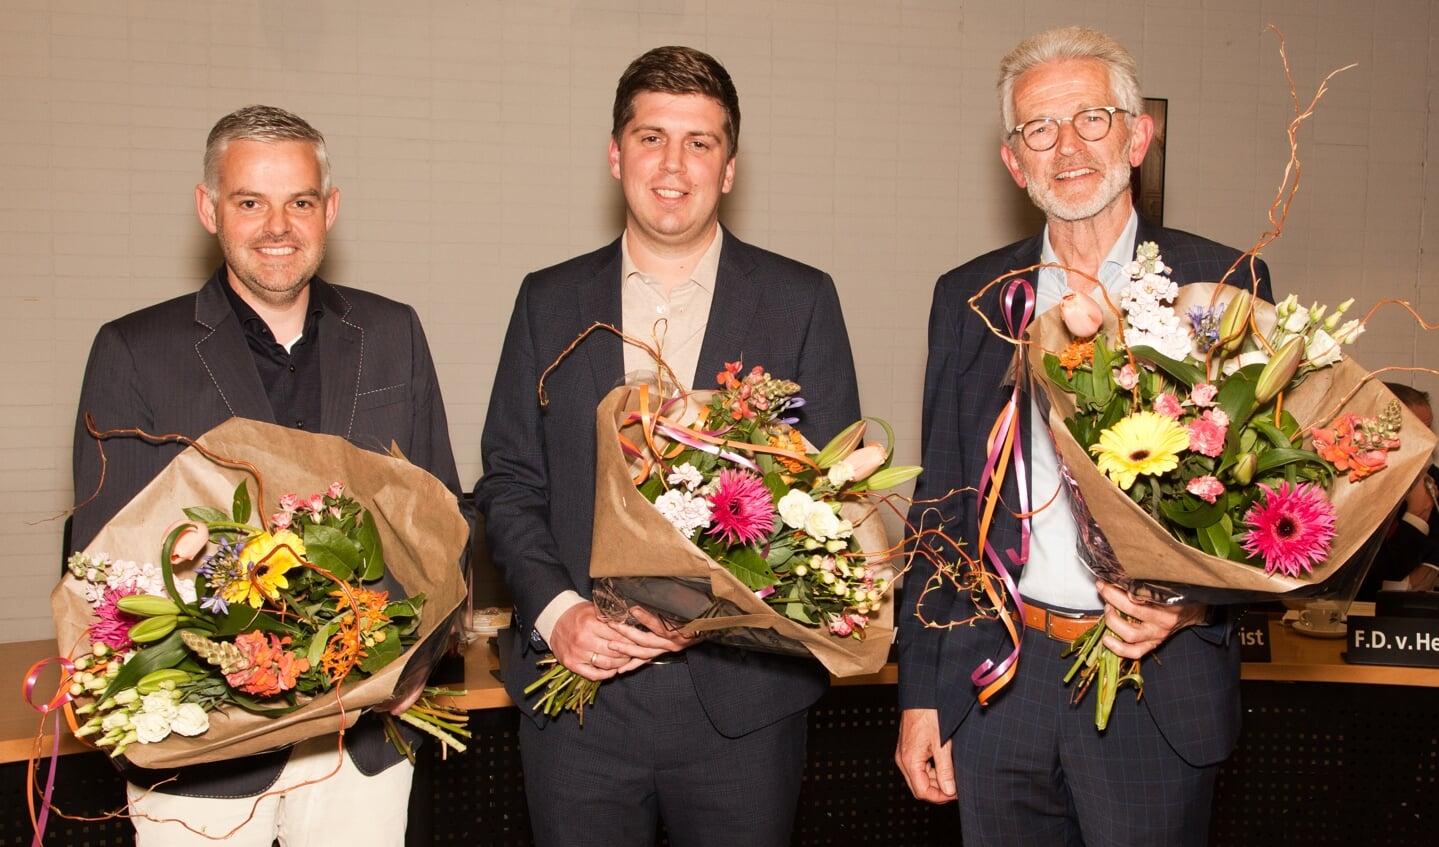 De vertrekkende raadsleden met vlnr.: Johannes Mattiesing (SGP),
Reinder van Meijeren (CDA) en Matthijs Kortleven (ChristenUnie)